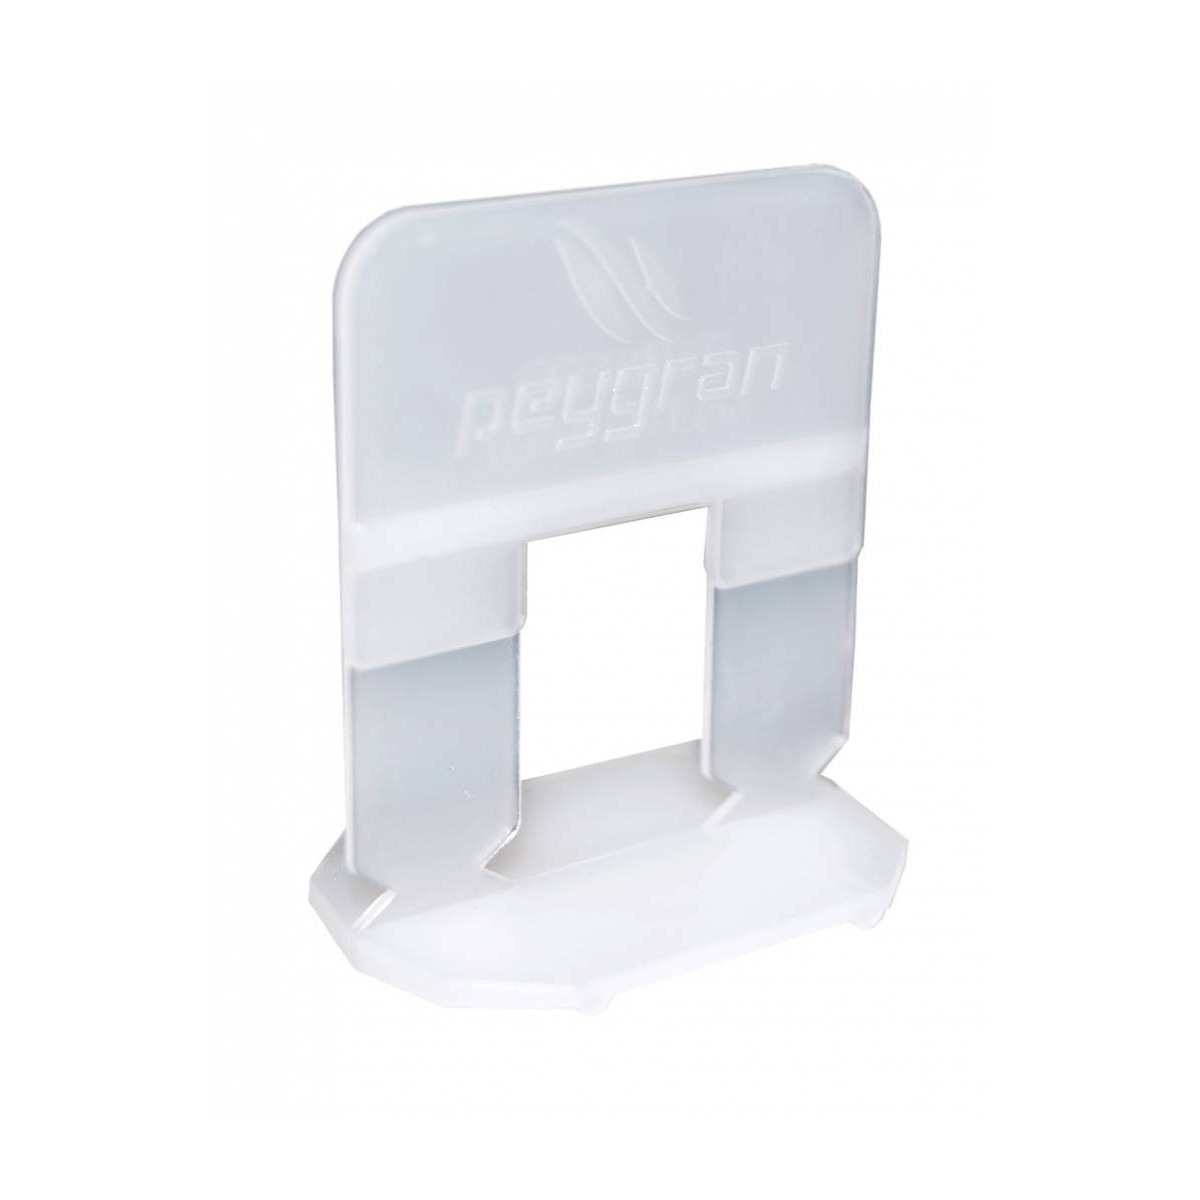 Calzo de Peygran de 1 mm (Bolsa de 300 unidades) - Peygran